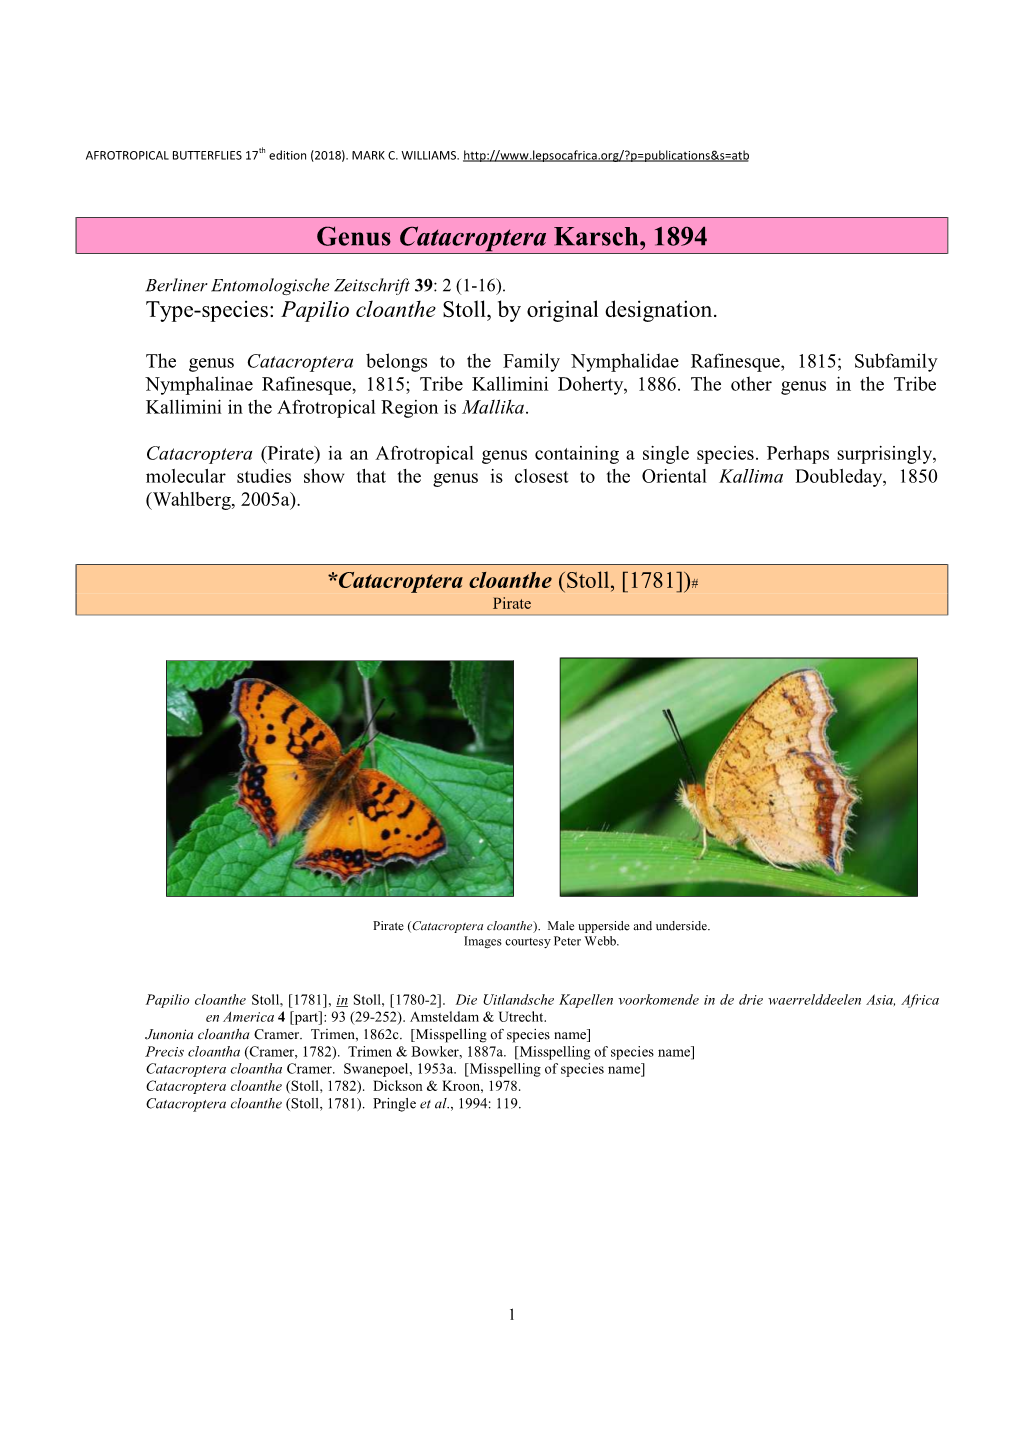 173 Genus Catacroptera Karsch